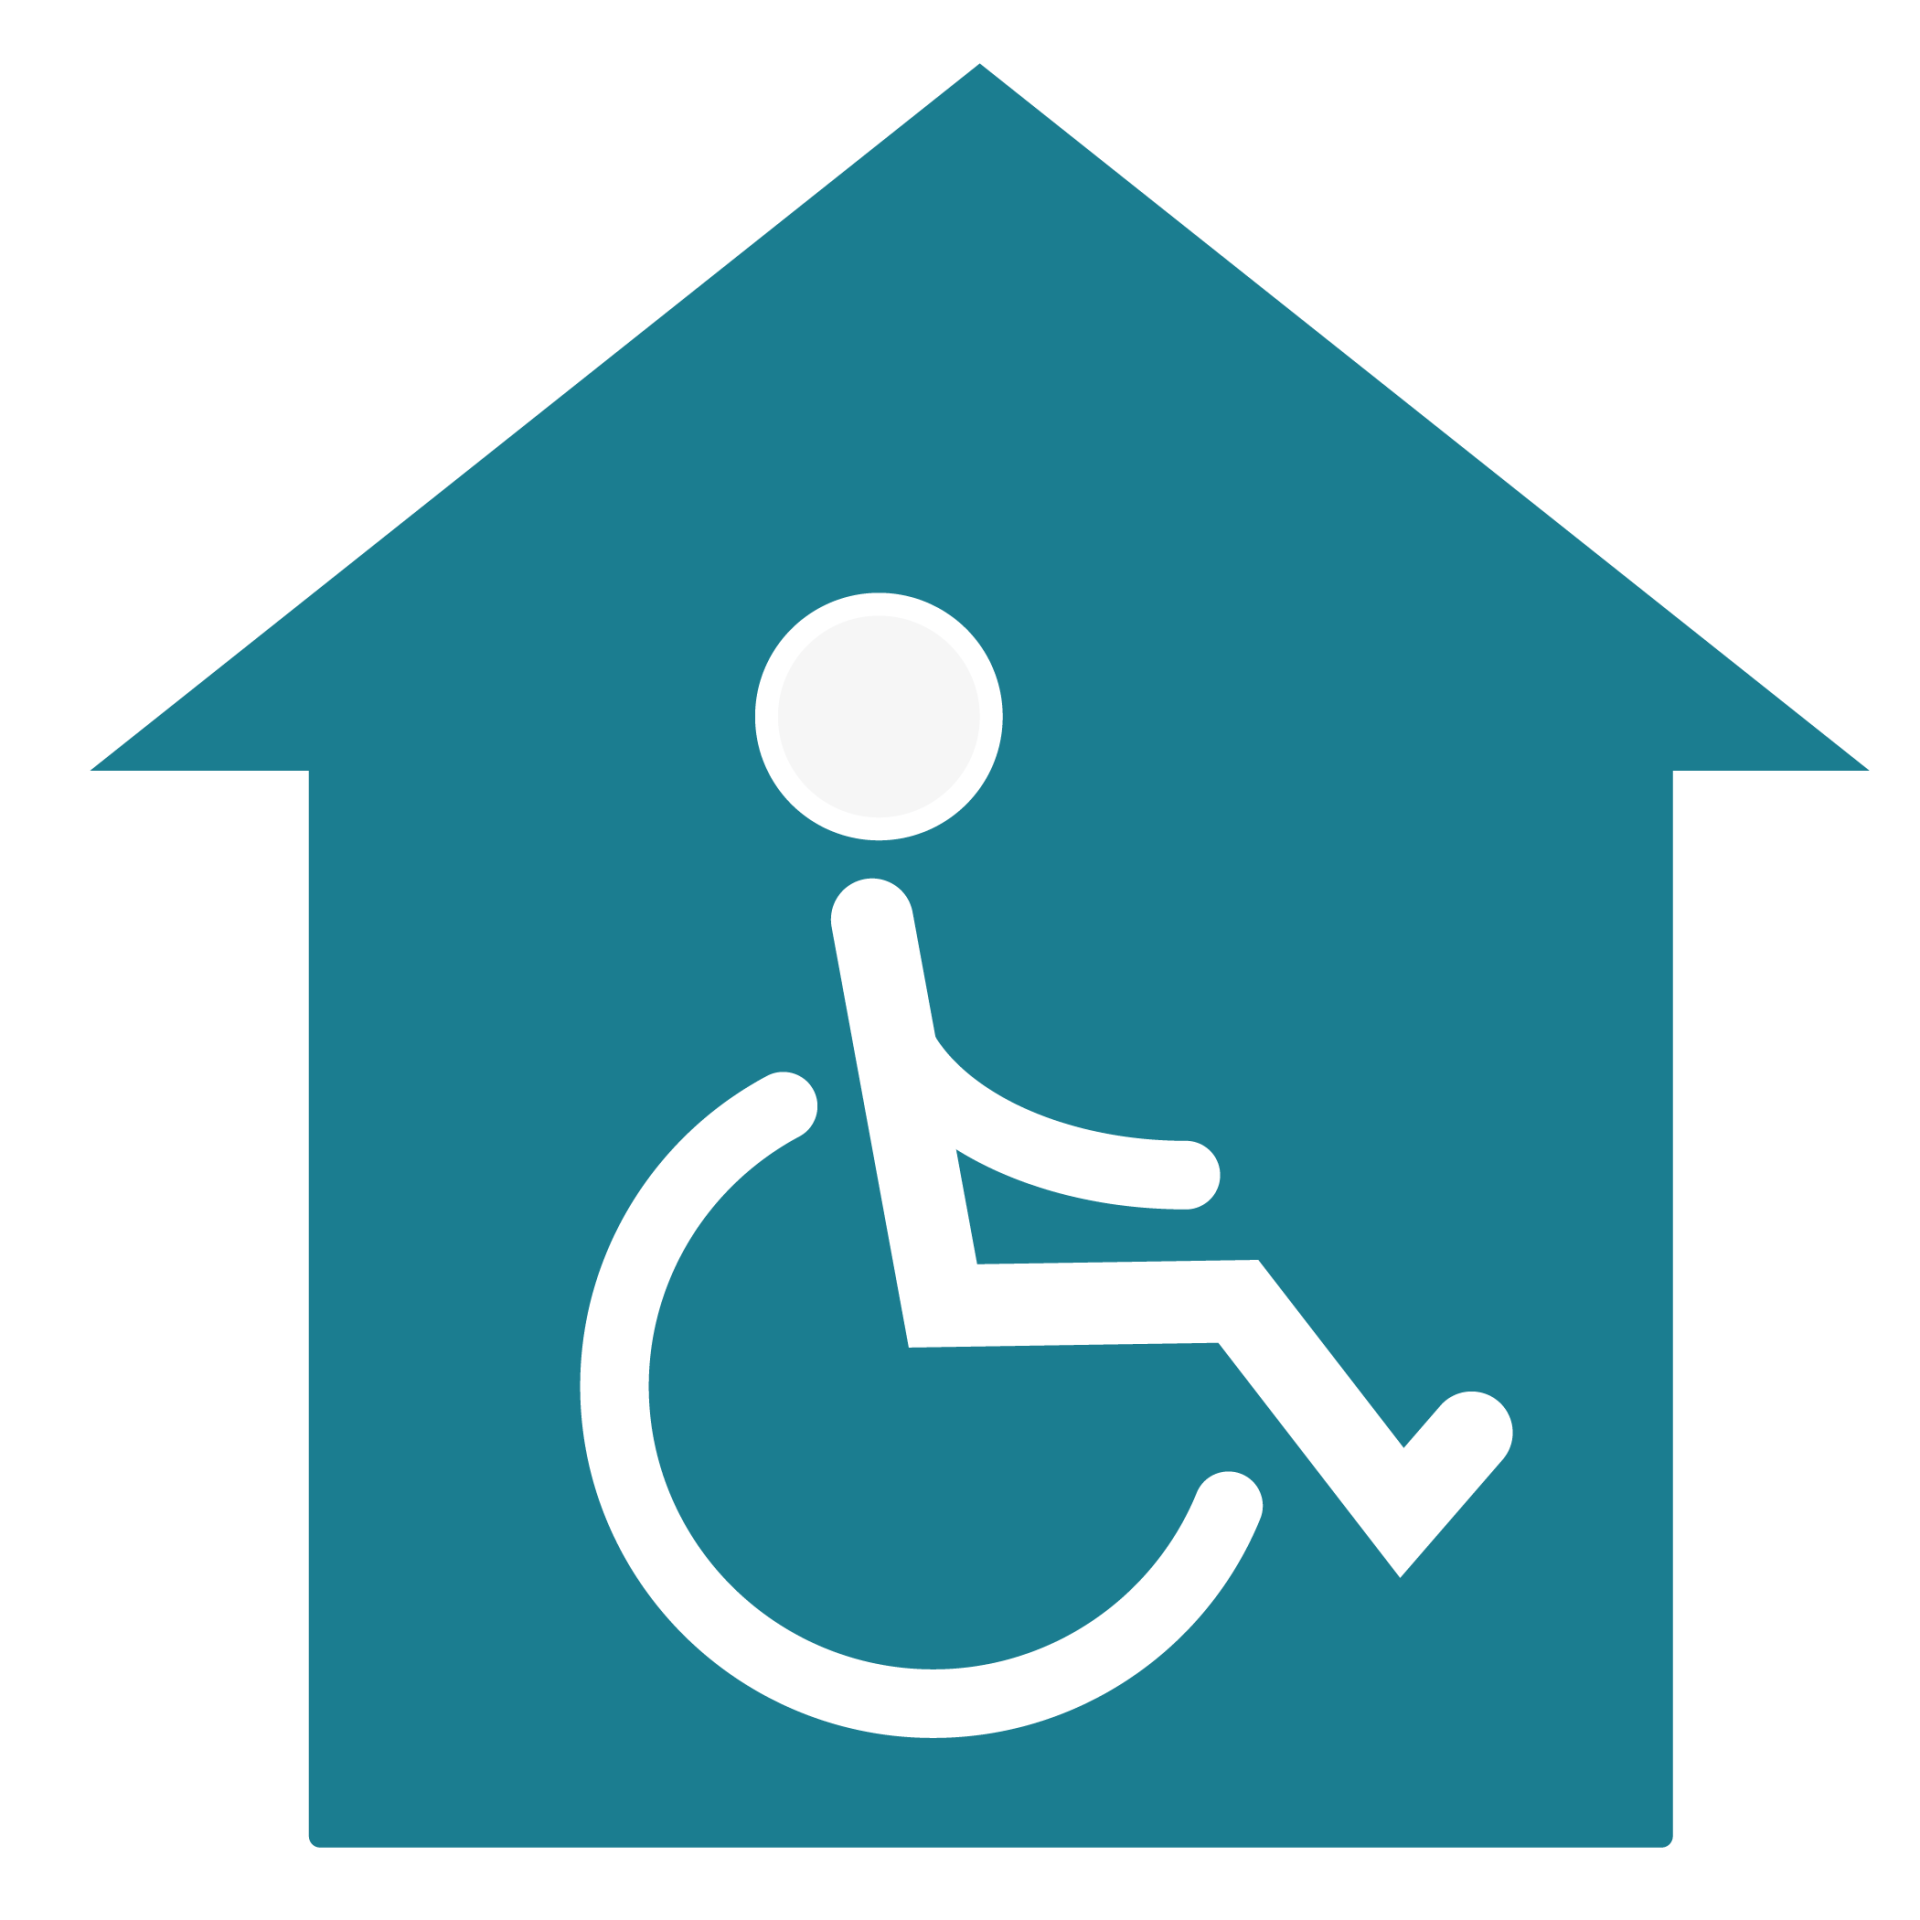 Symbolbild: Ein Haus mit einem Rollstuhlfahrer, das für eine Vorbildfunktion steht